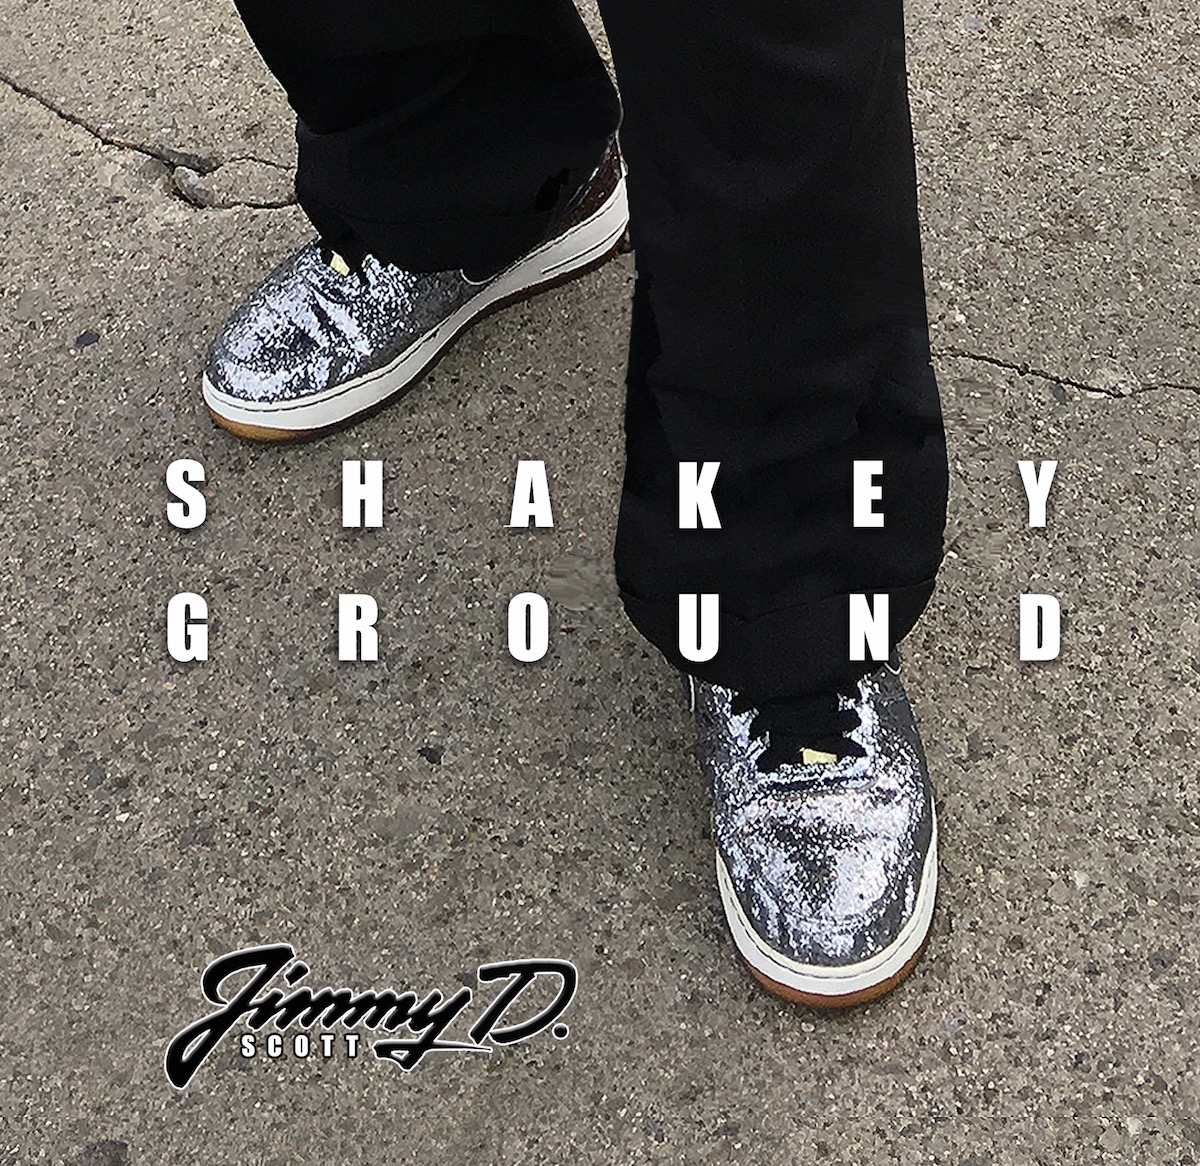 Jimmy D. Scott - Shakey Ground